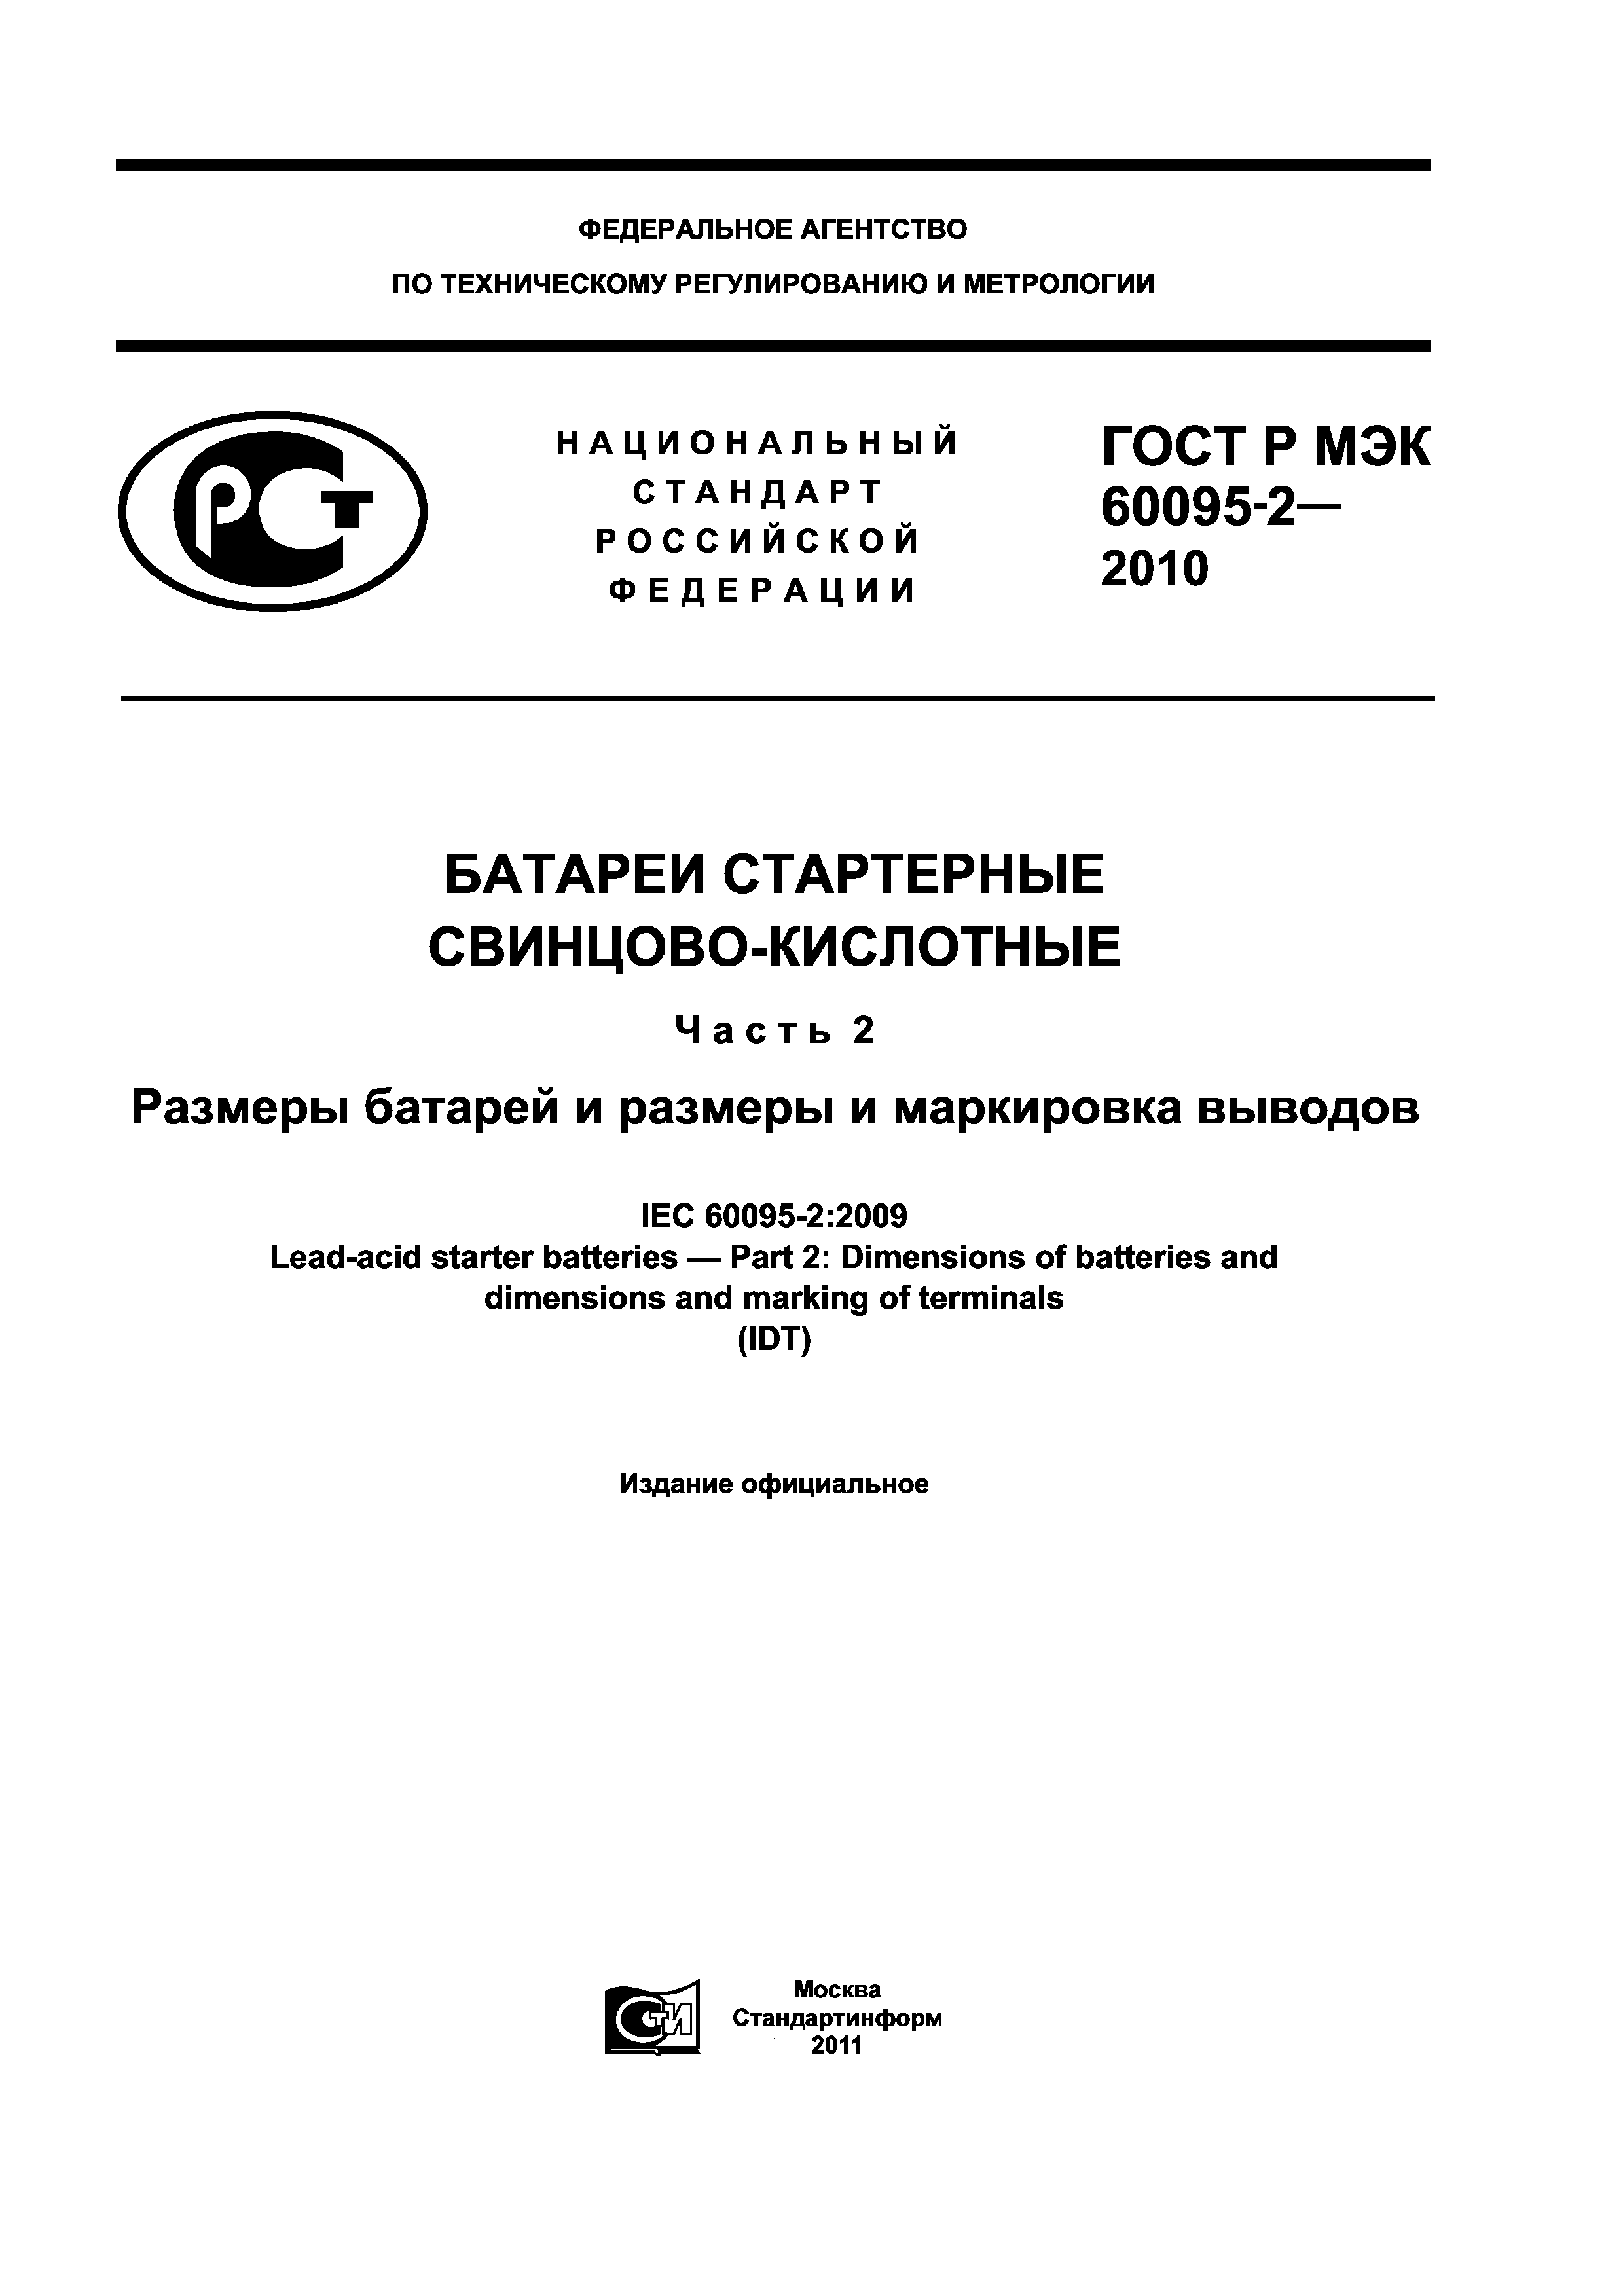 ГОСТ Р МЭК 60095-2-2010